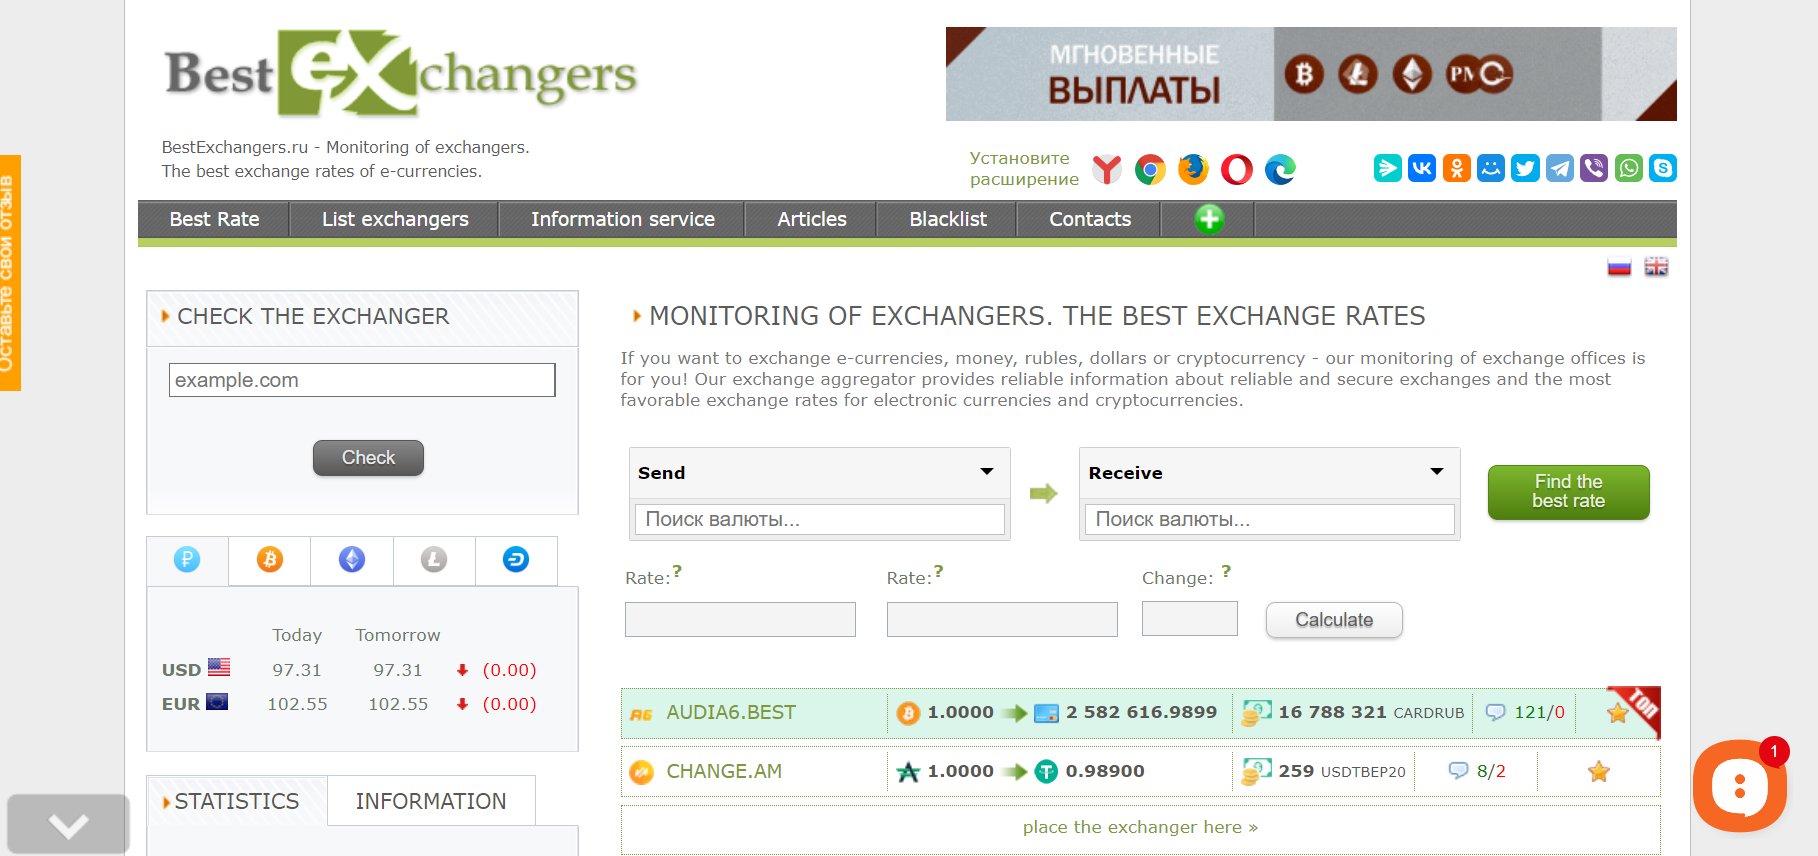 Bestexchangers.ru Currency Exchanger Reviews